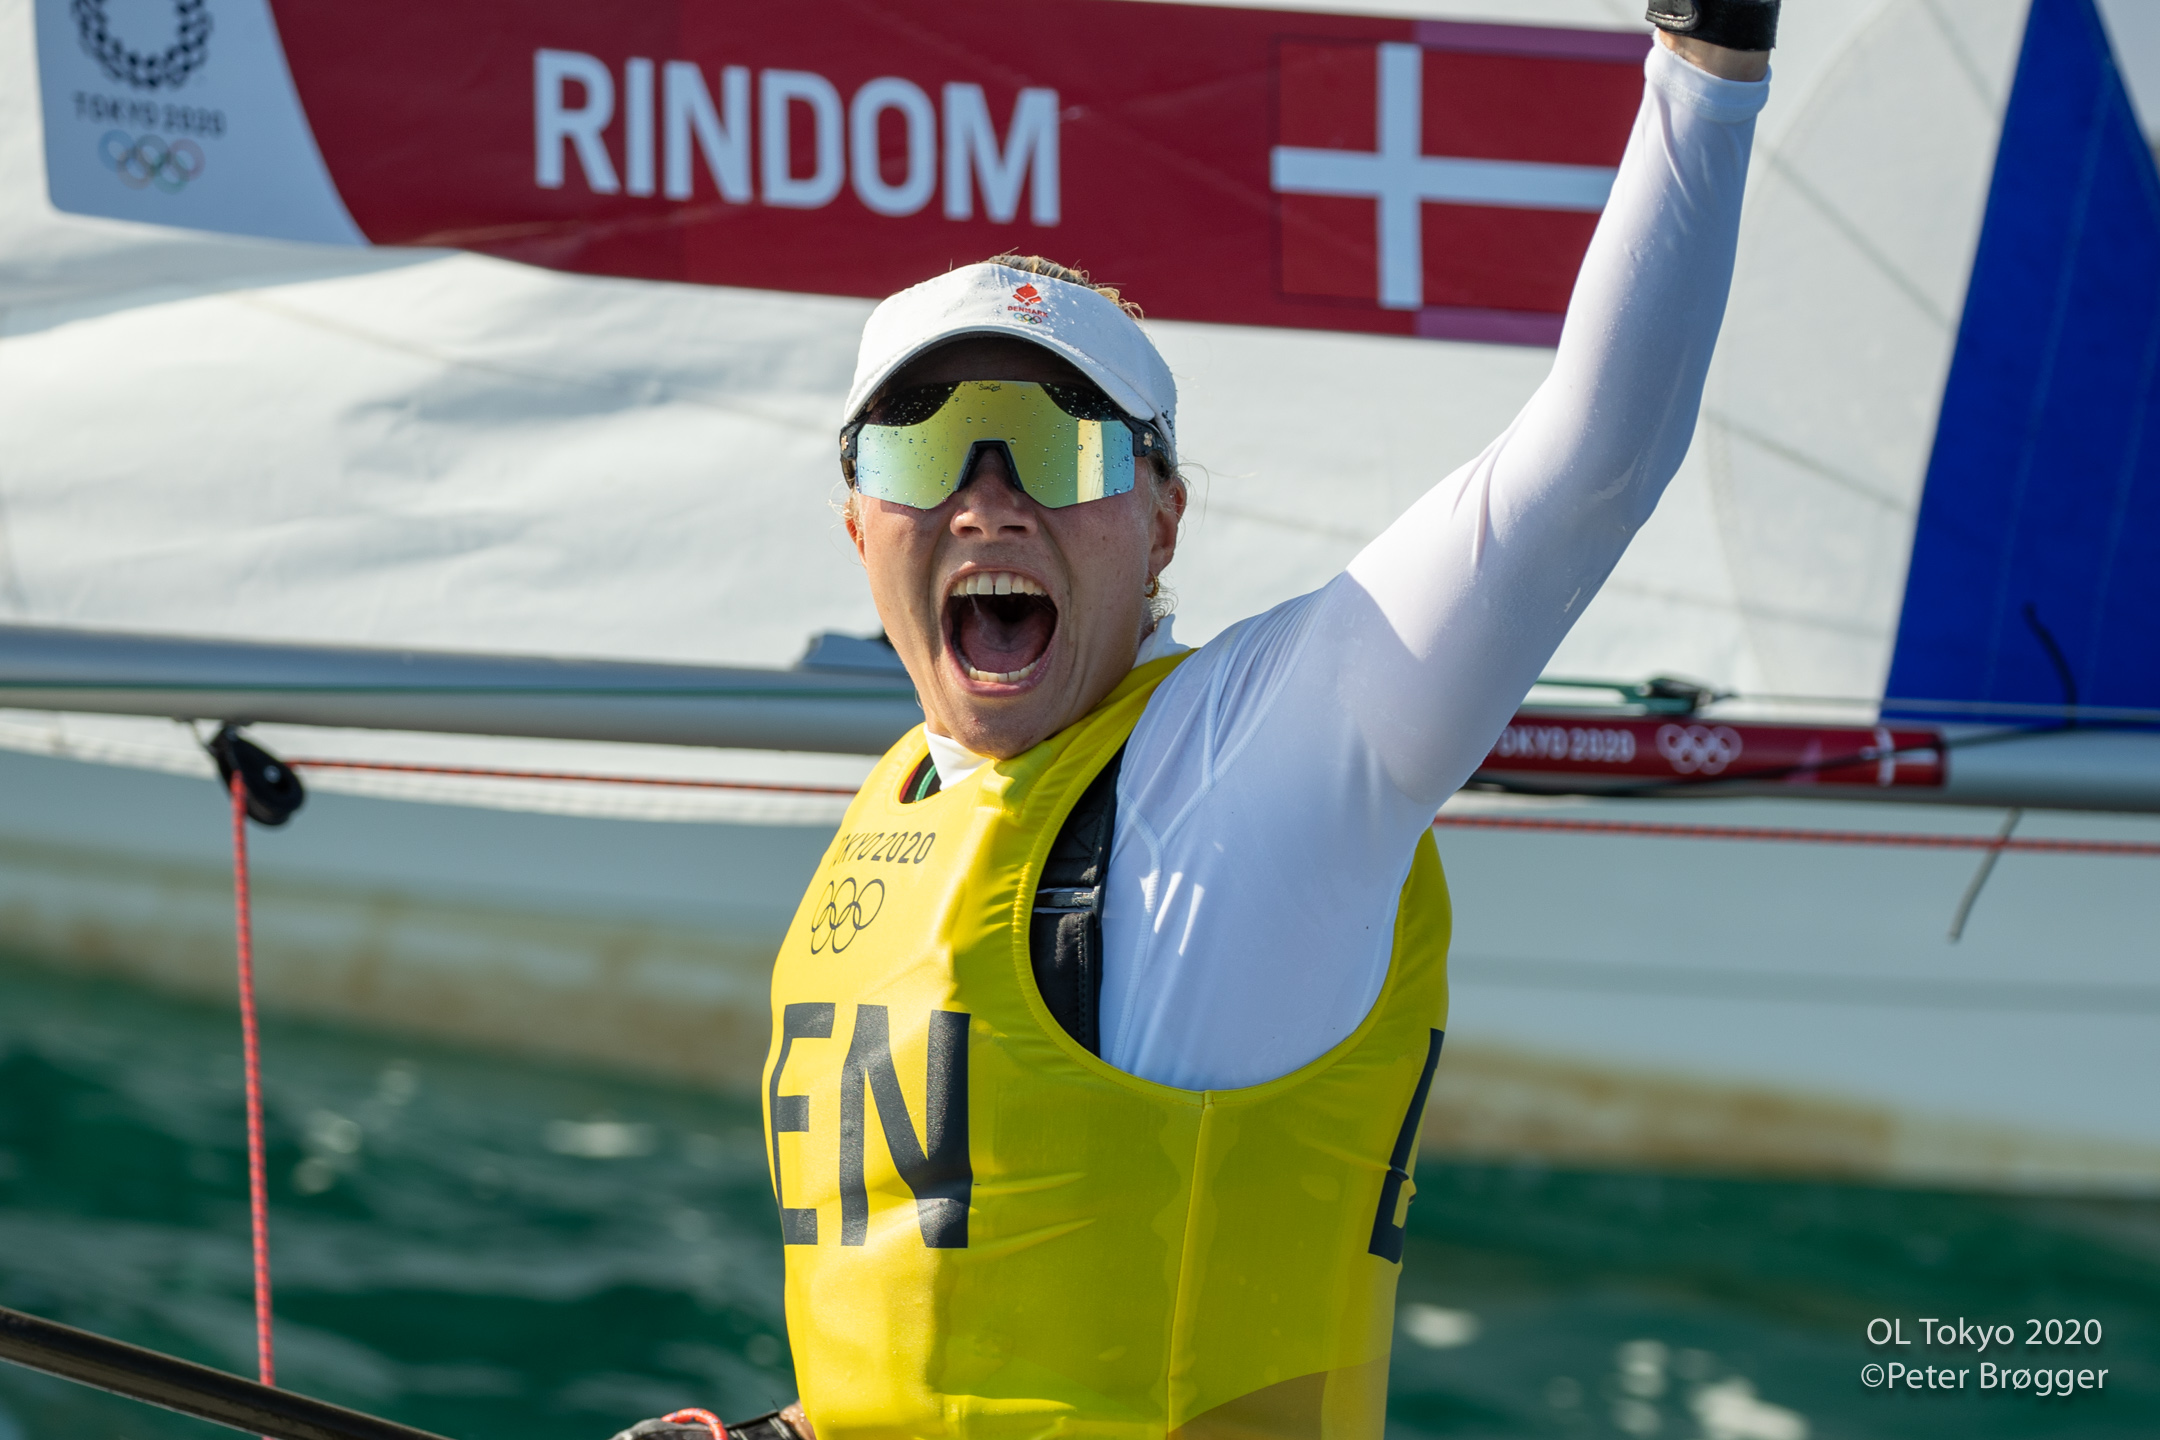 interferens Rodeo nummer BREAKING. Anne-Marie Rindom ny olympisk mester i Laser Radial efter vildt  medal race - se fotogalleri - Minbaad.dk